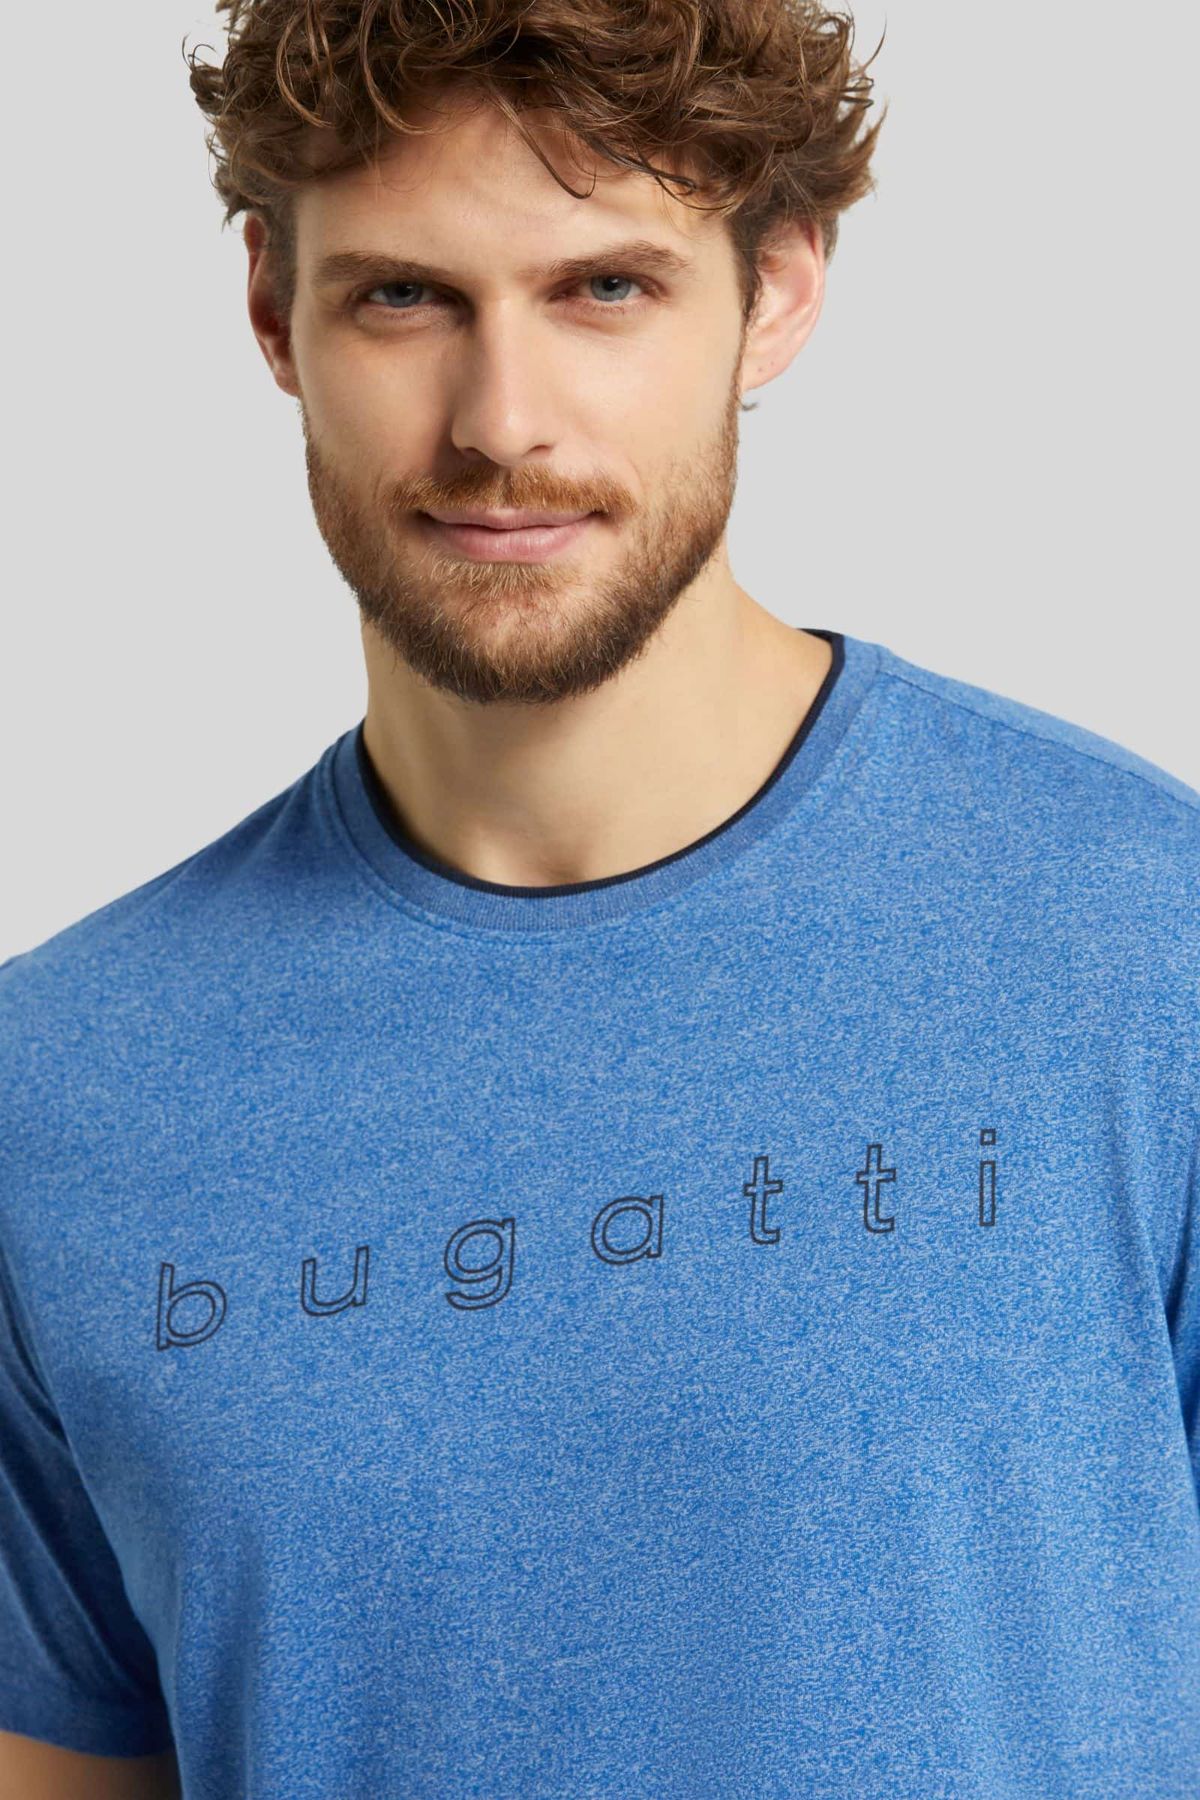 Чоловіча футболка Bugatti 8350 15085/360 Синя L